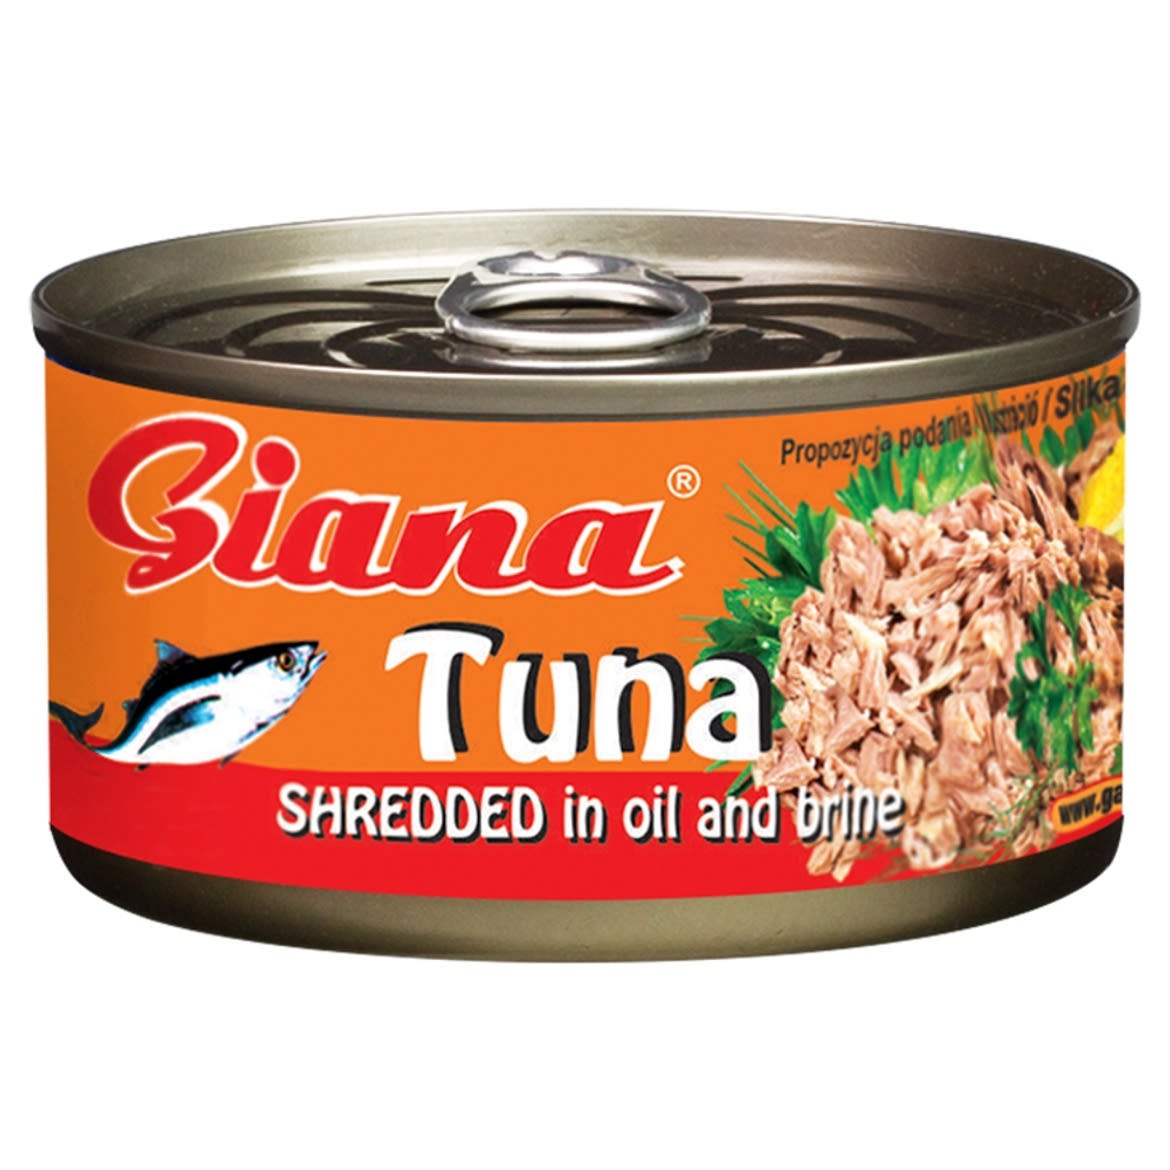 Giana aprított tonhal növényi olajban és sós lében